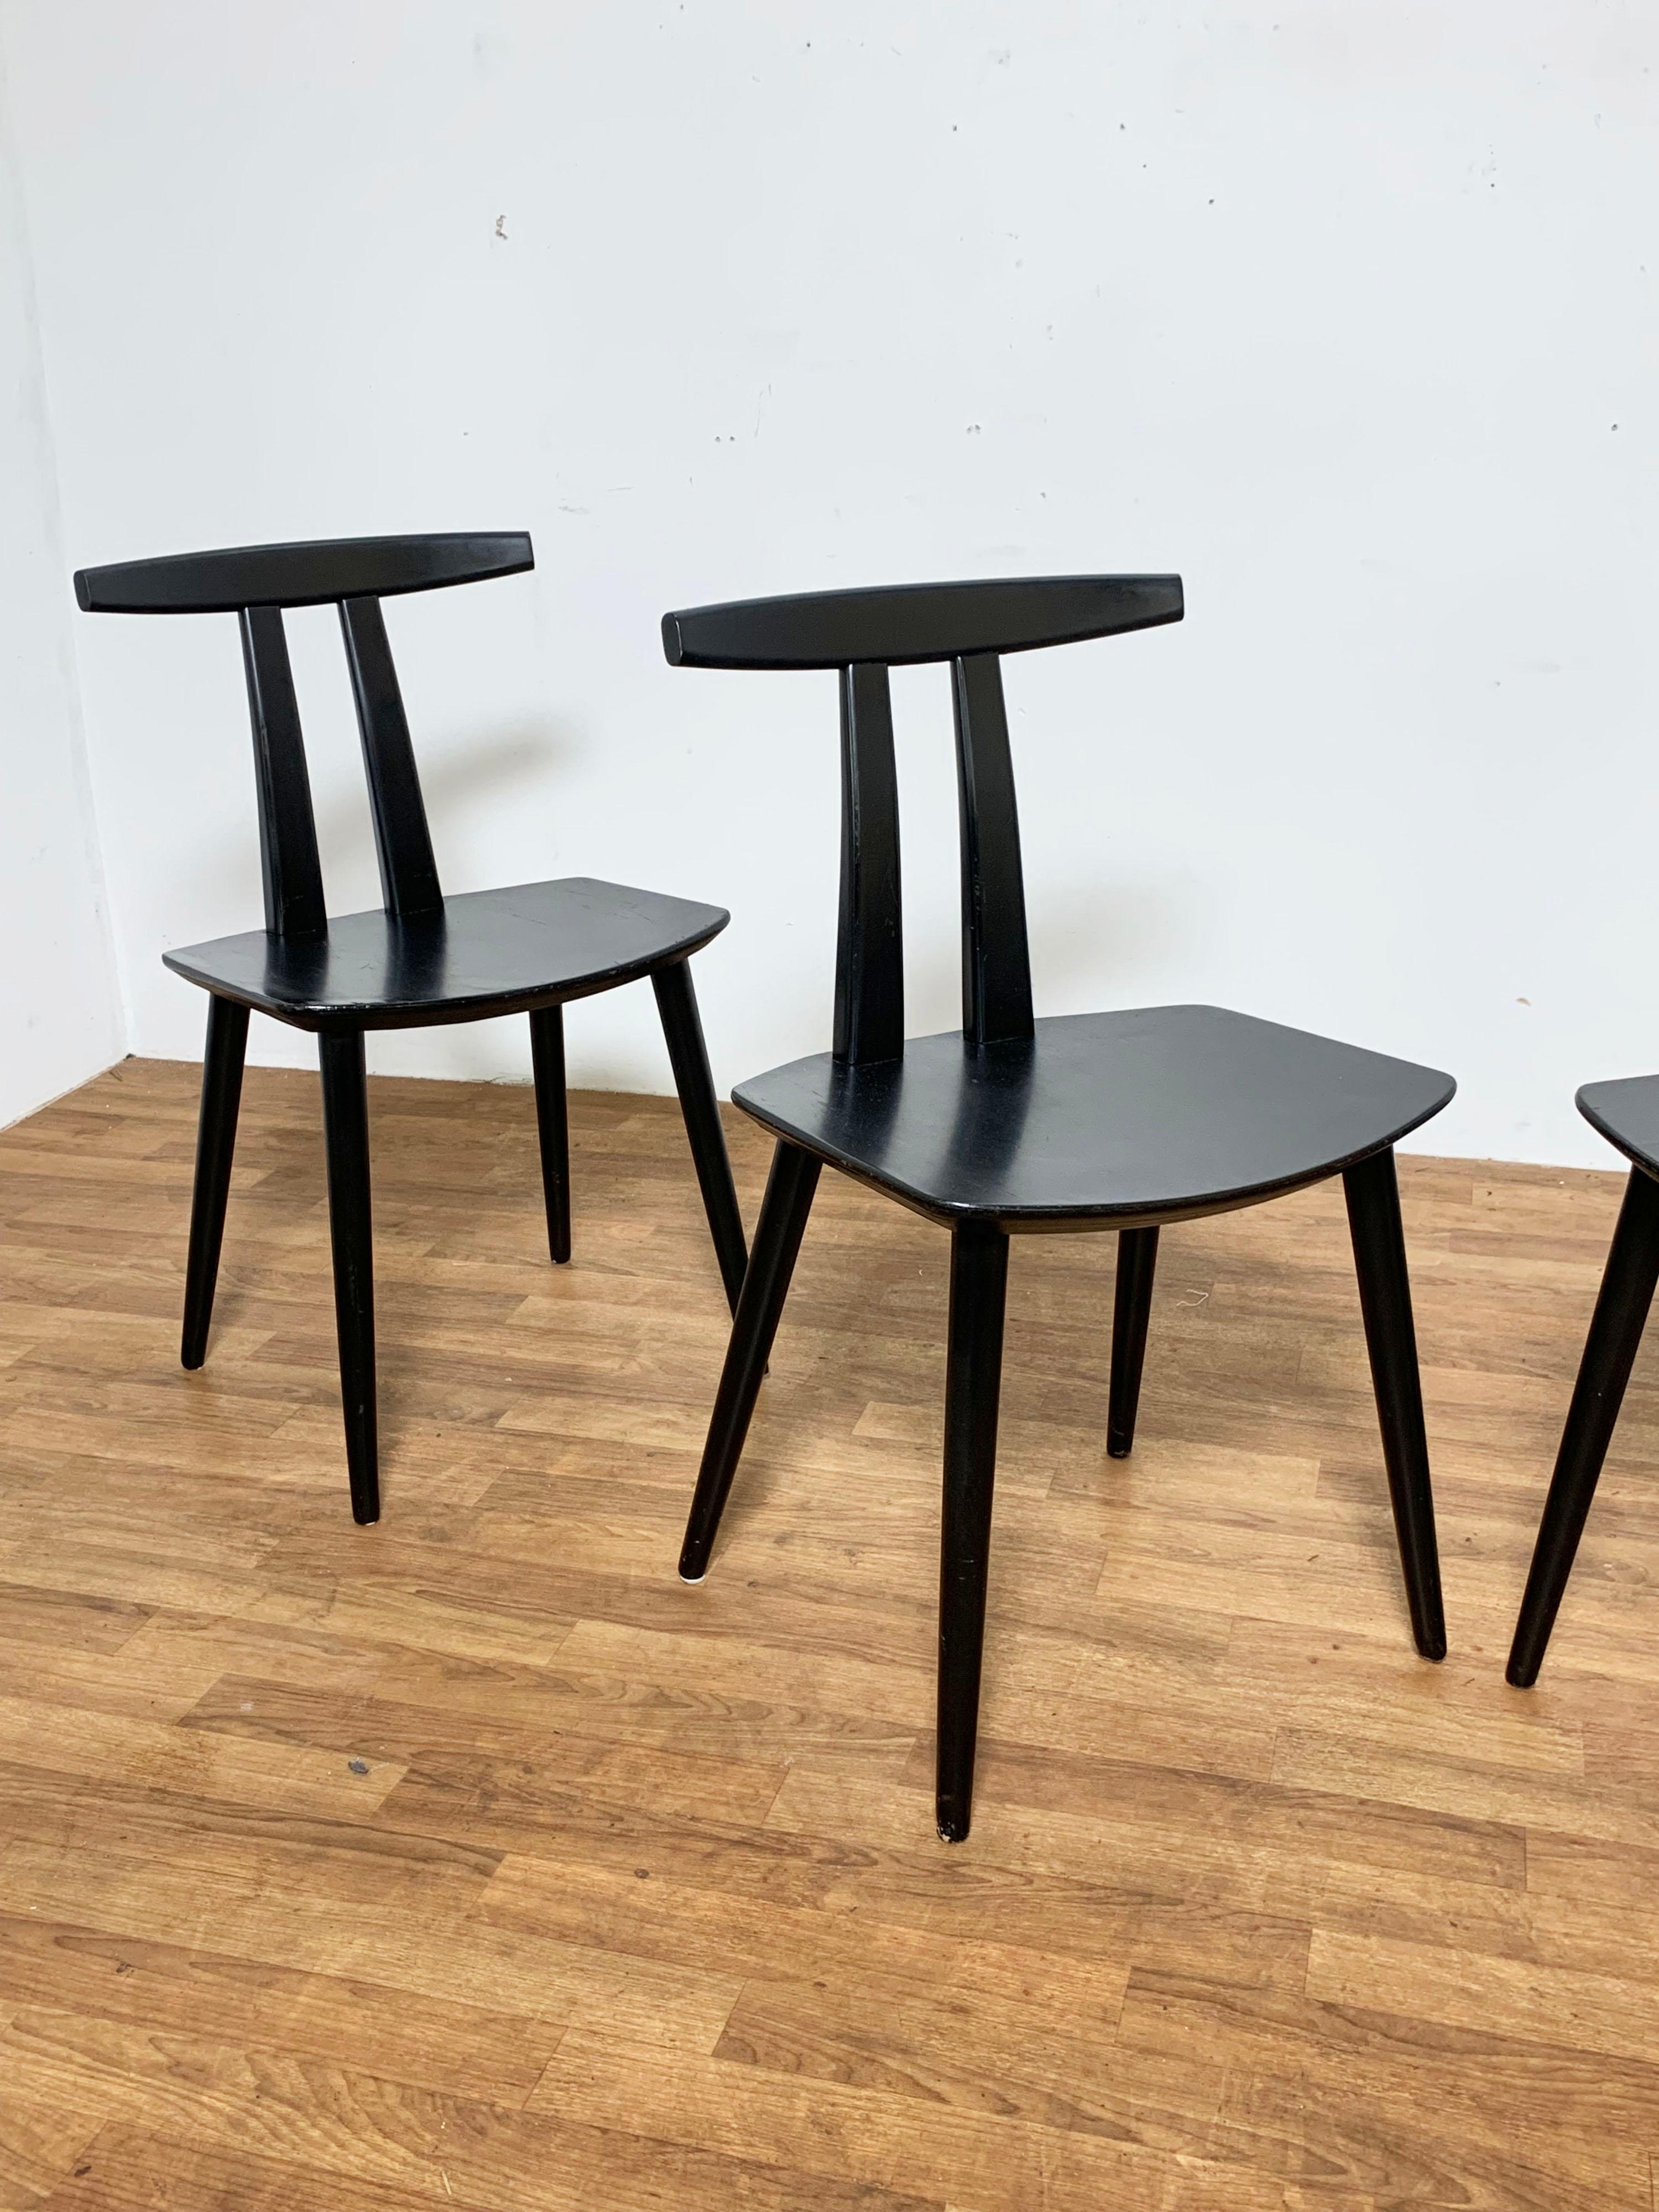 Satz von vier Esszimmerstühlen, entworfen von Folke Palsson für FDB Mobler, Dänemark, ca. 1960er Jahre. Er wird oft als 